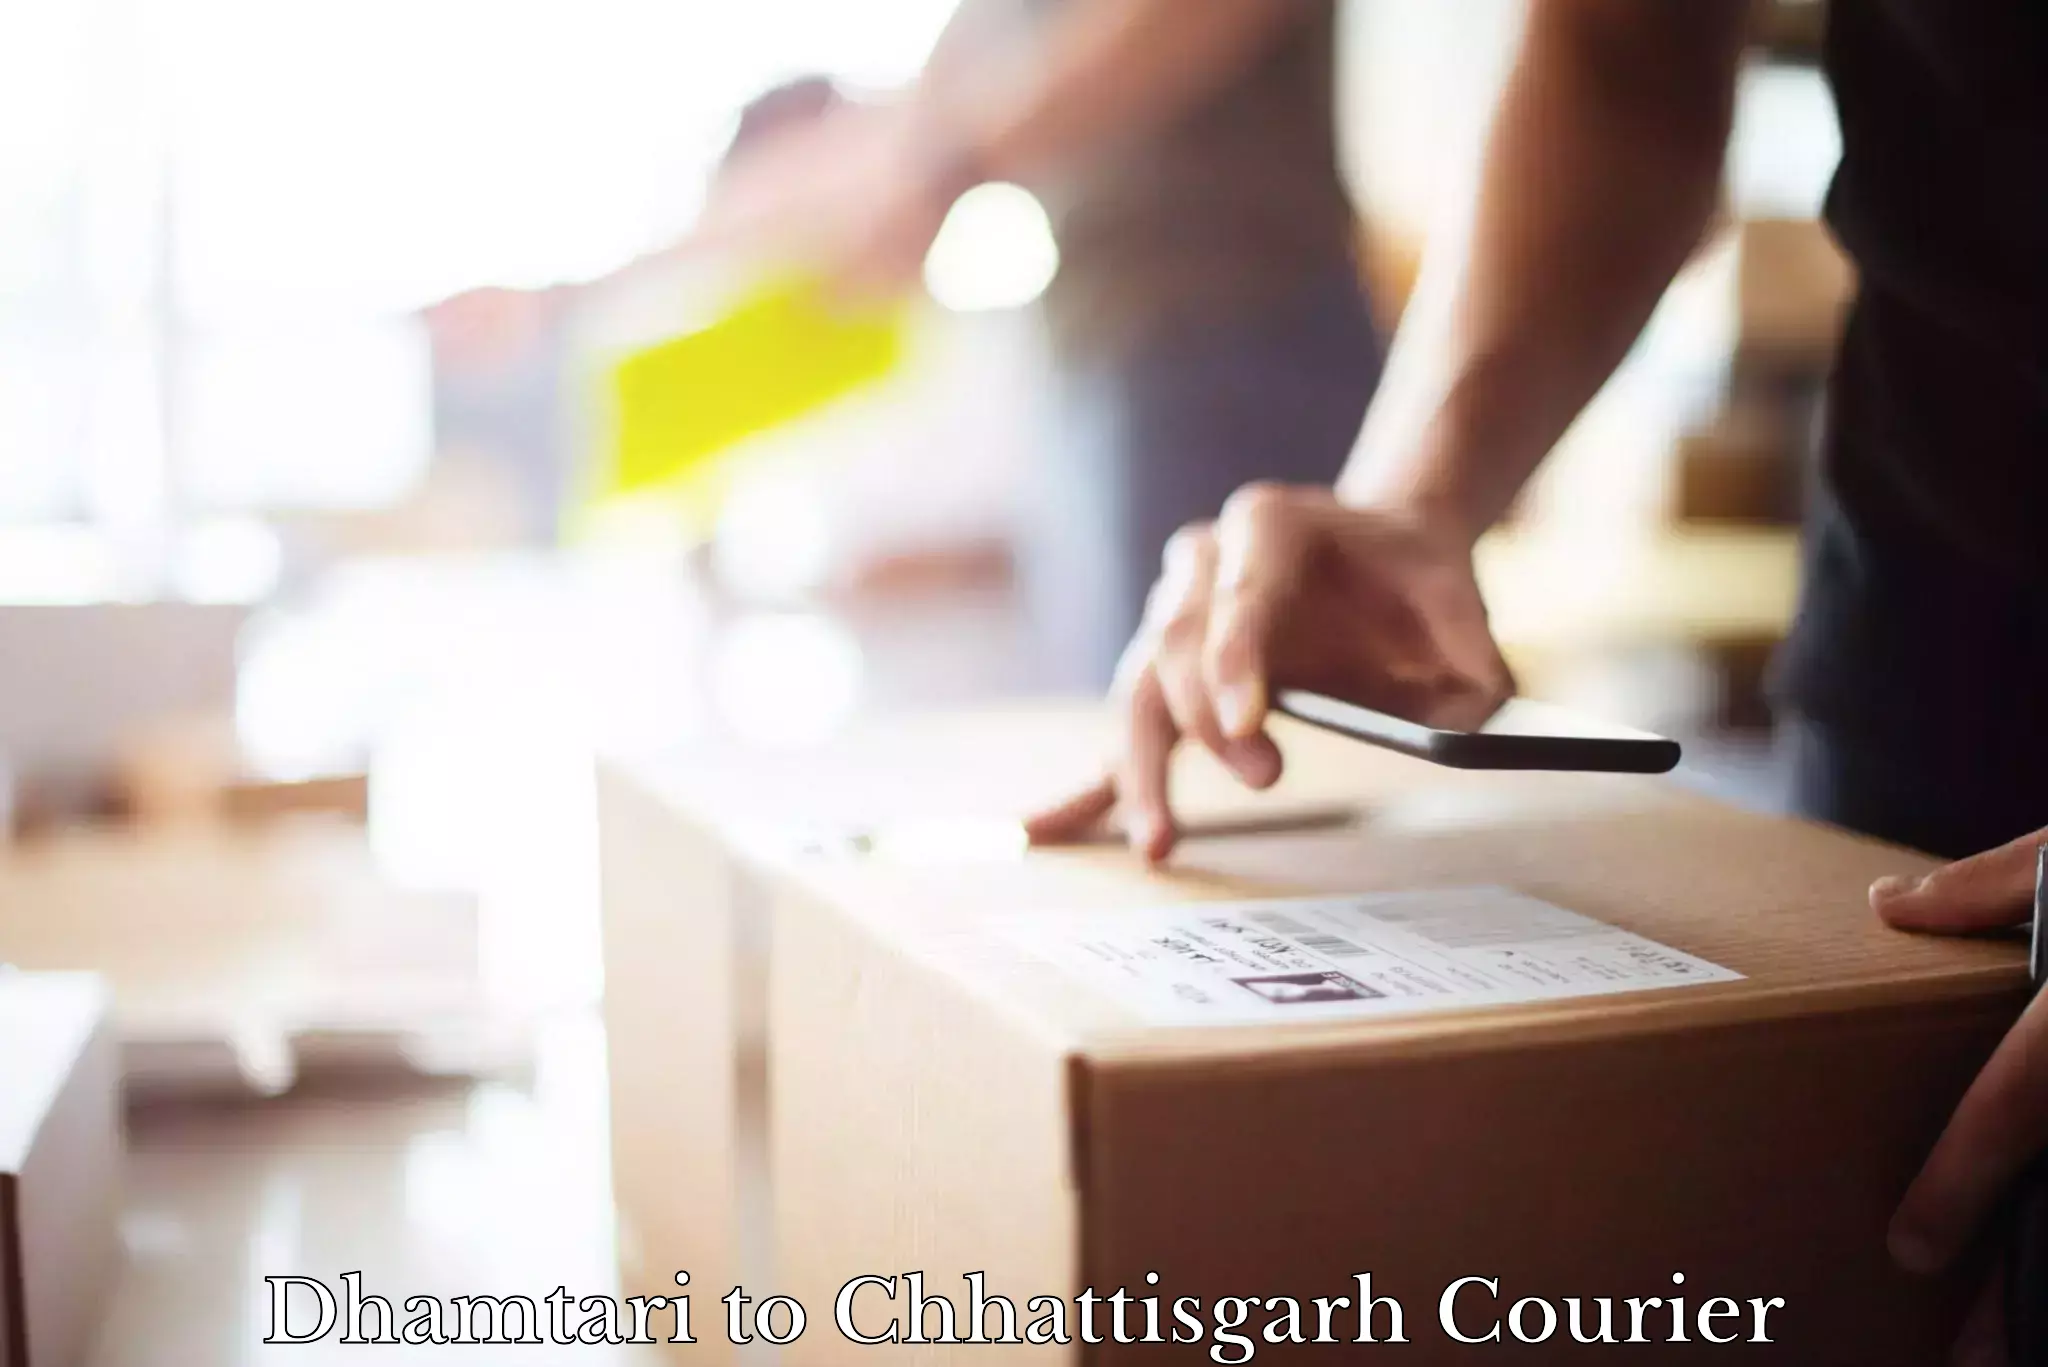 Reliable courier service Dhamtari to Bijapur Chhattisgarh